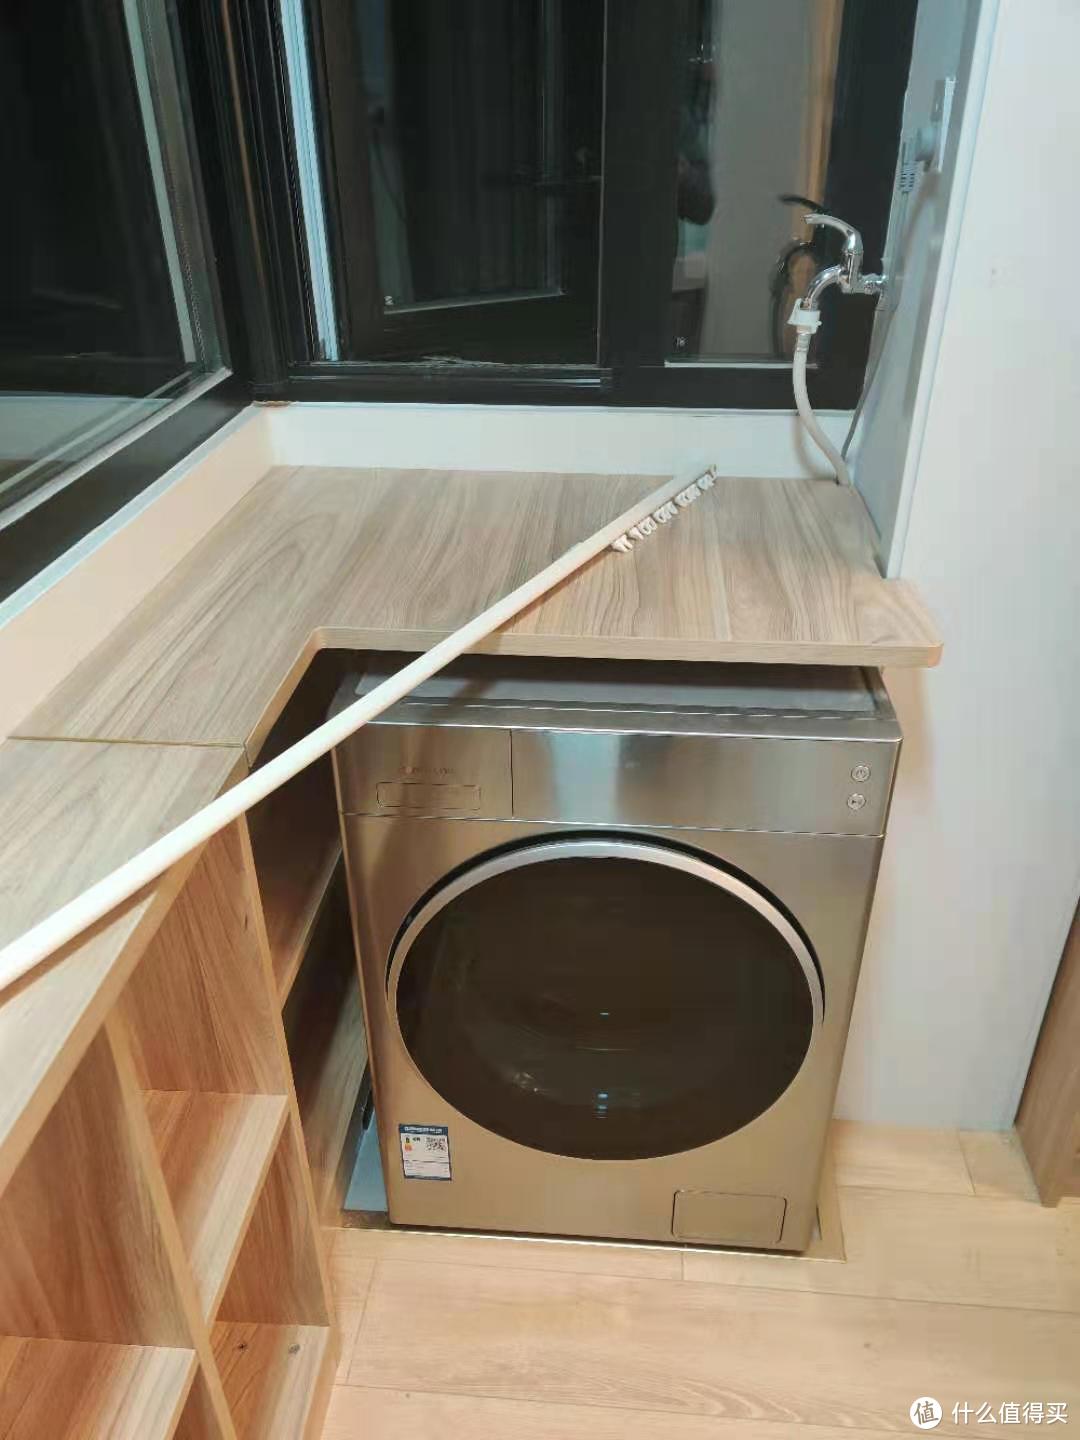 架子洗衣机一侧现场切割洗衣机进水管孔